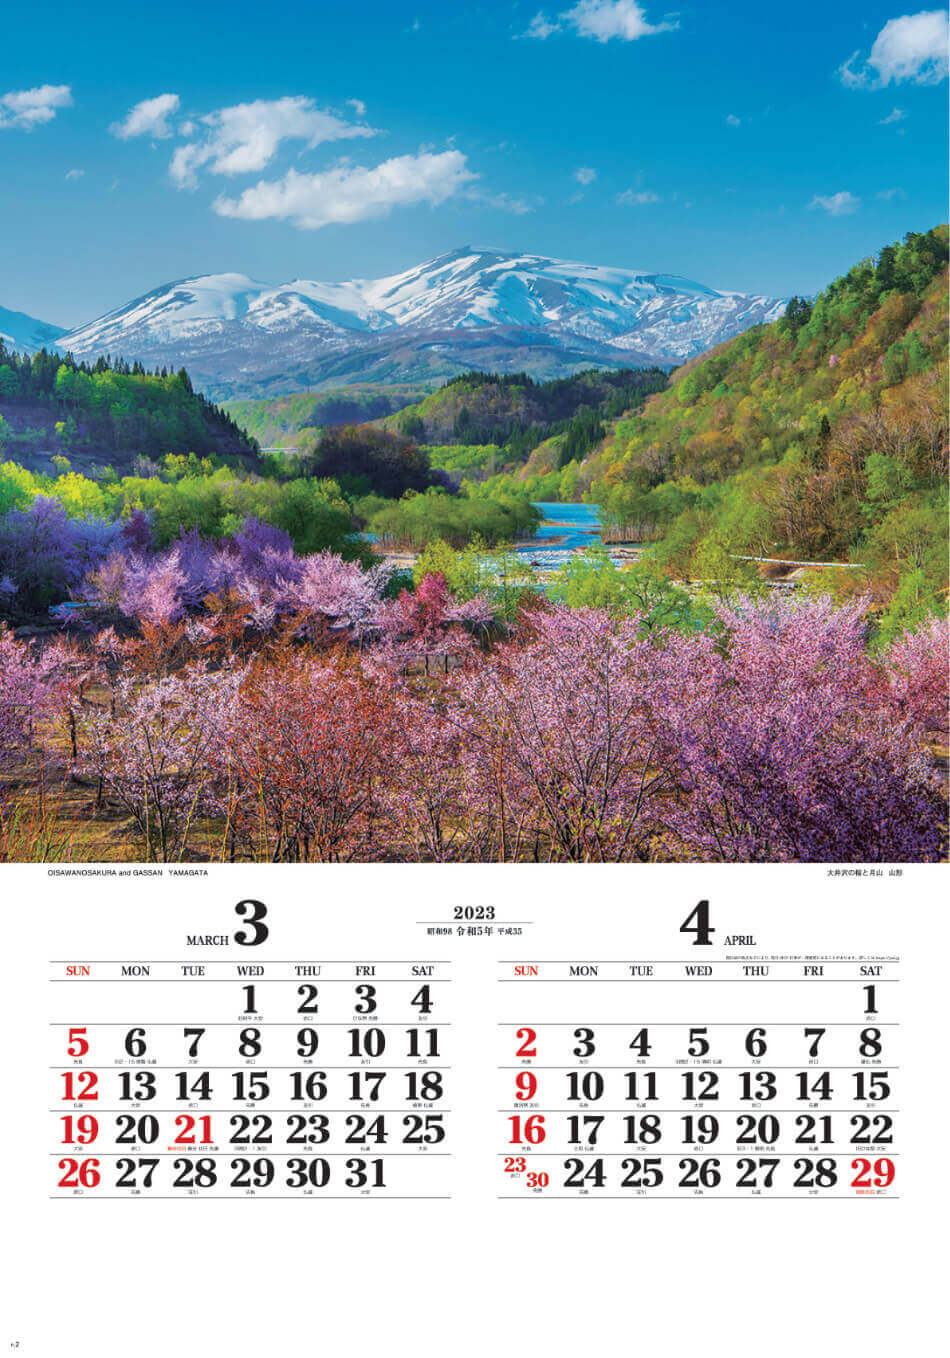 3/4月 大井沢と月山(山形) ワイドニッポン(フィルムムカレンダー） 2023年カレンダーの画像